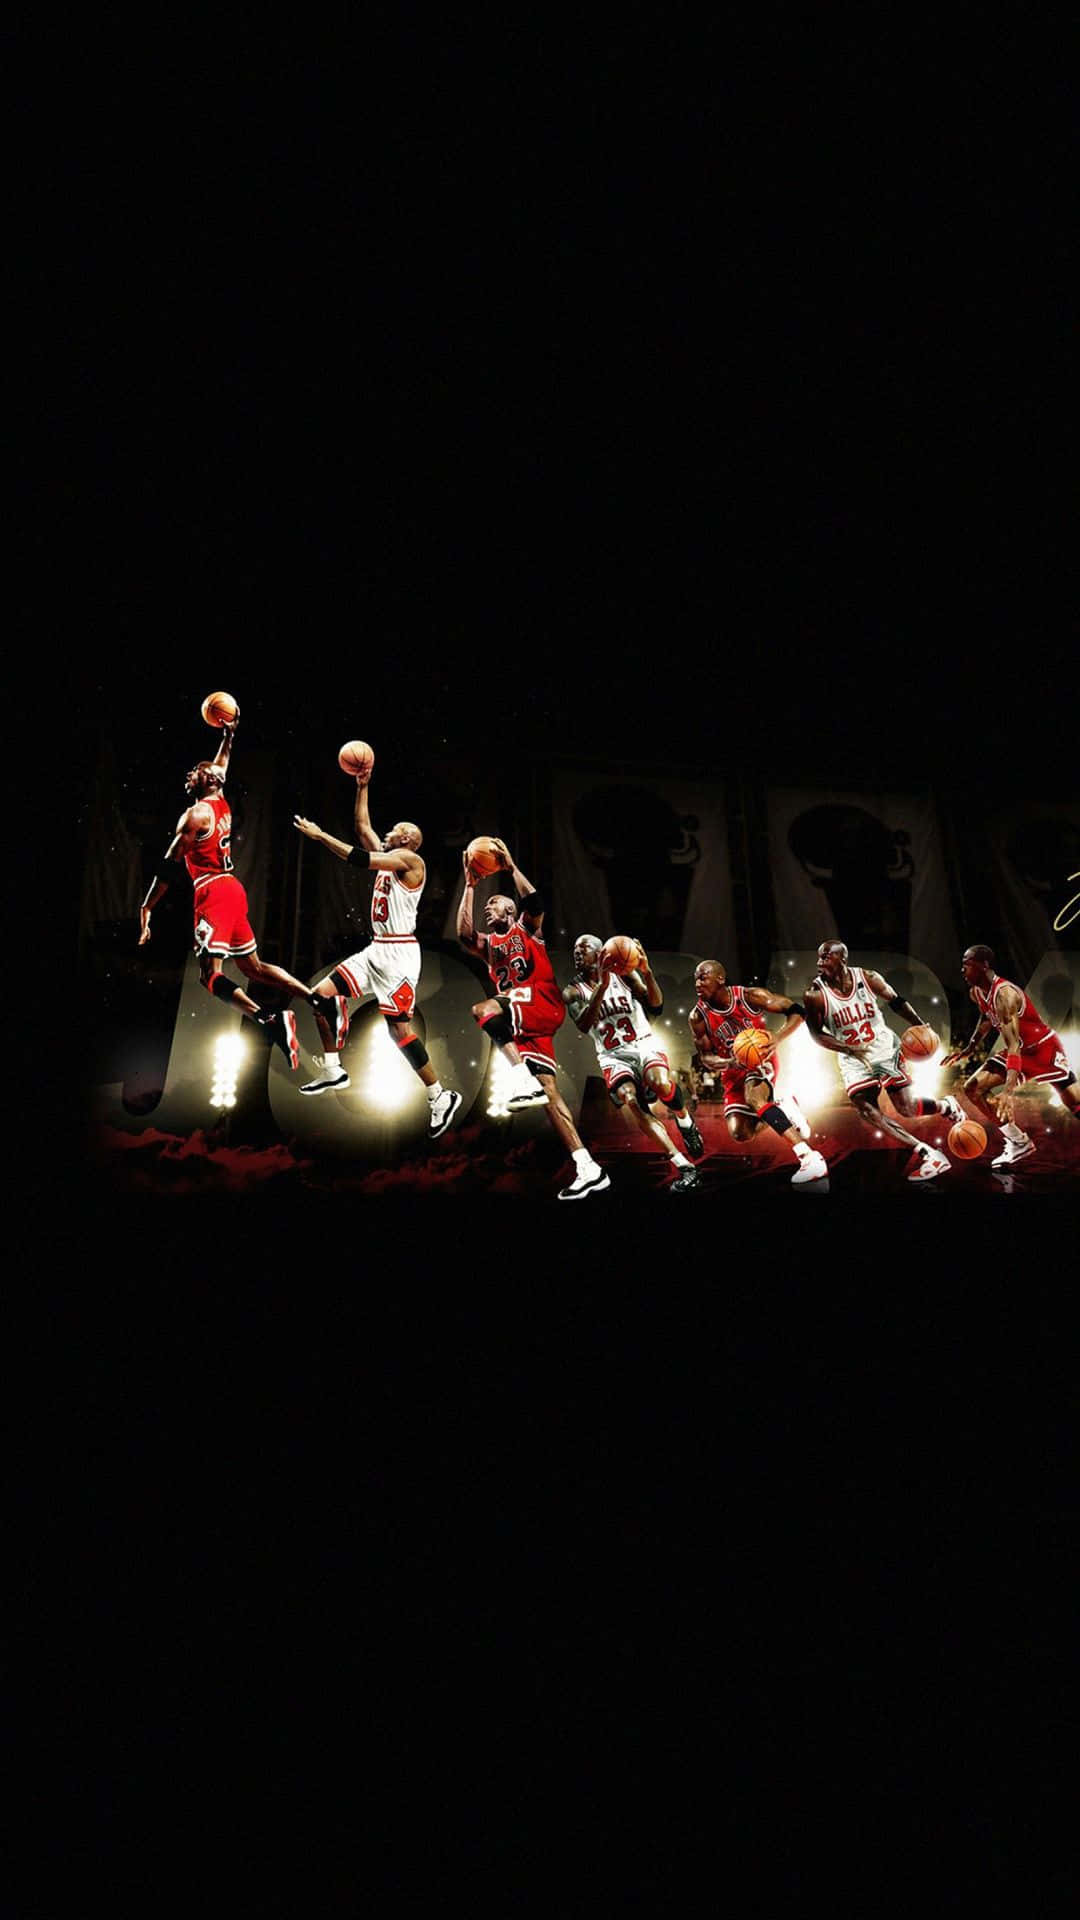 Michael Jordan Jumping Iphone Wallpaper Picture